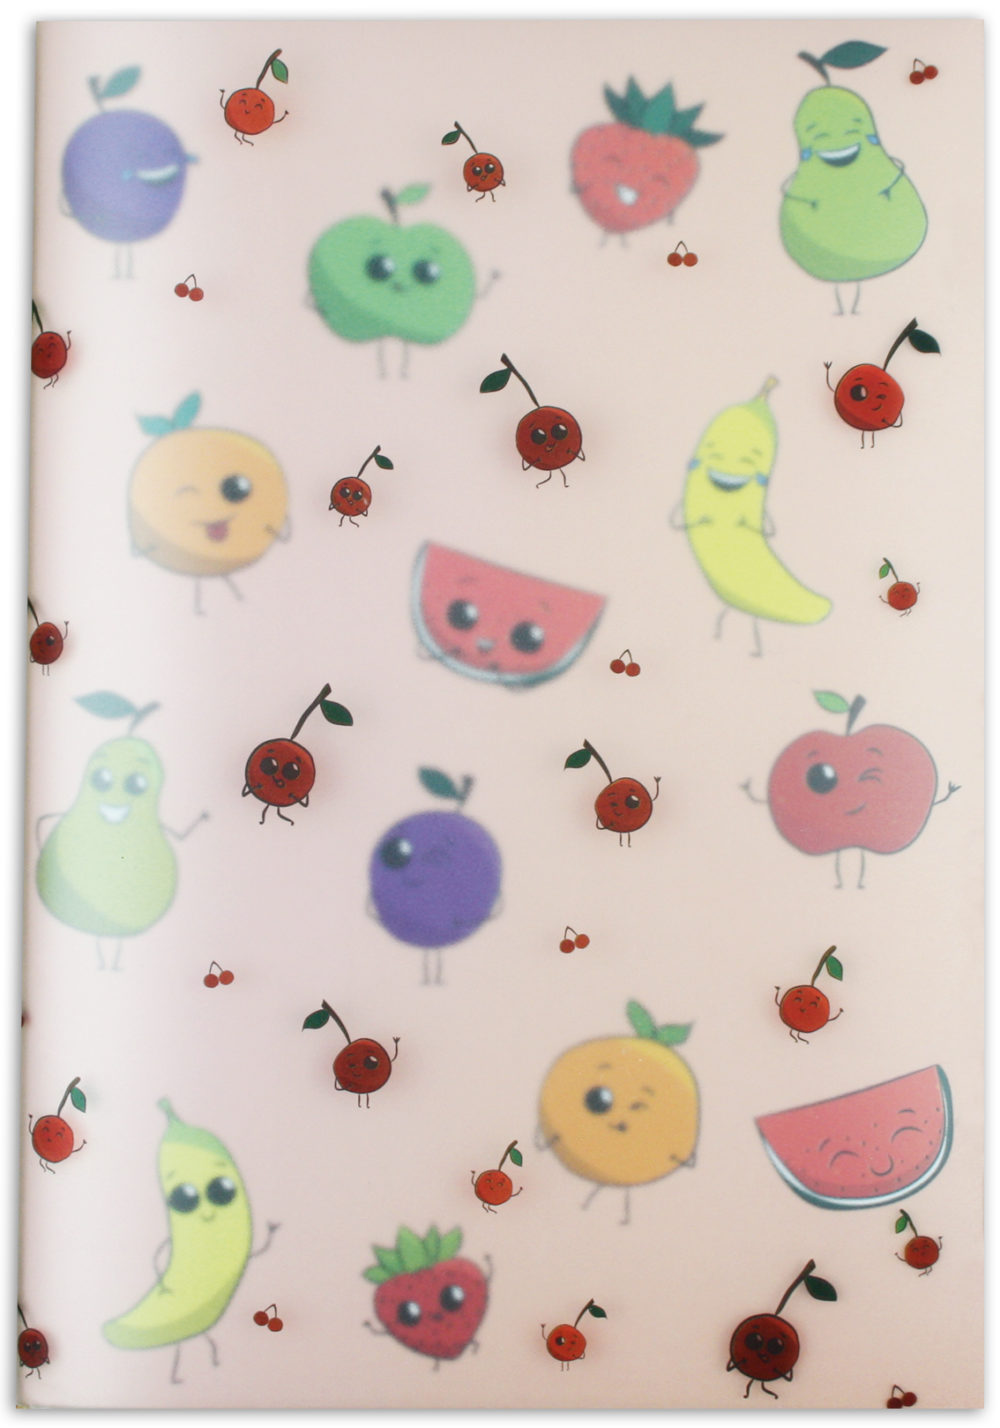 Heft "Früchte" im PP Umschlag Vorderseite mit verschiedenen Früchten